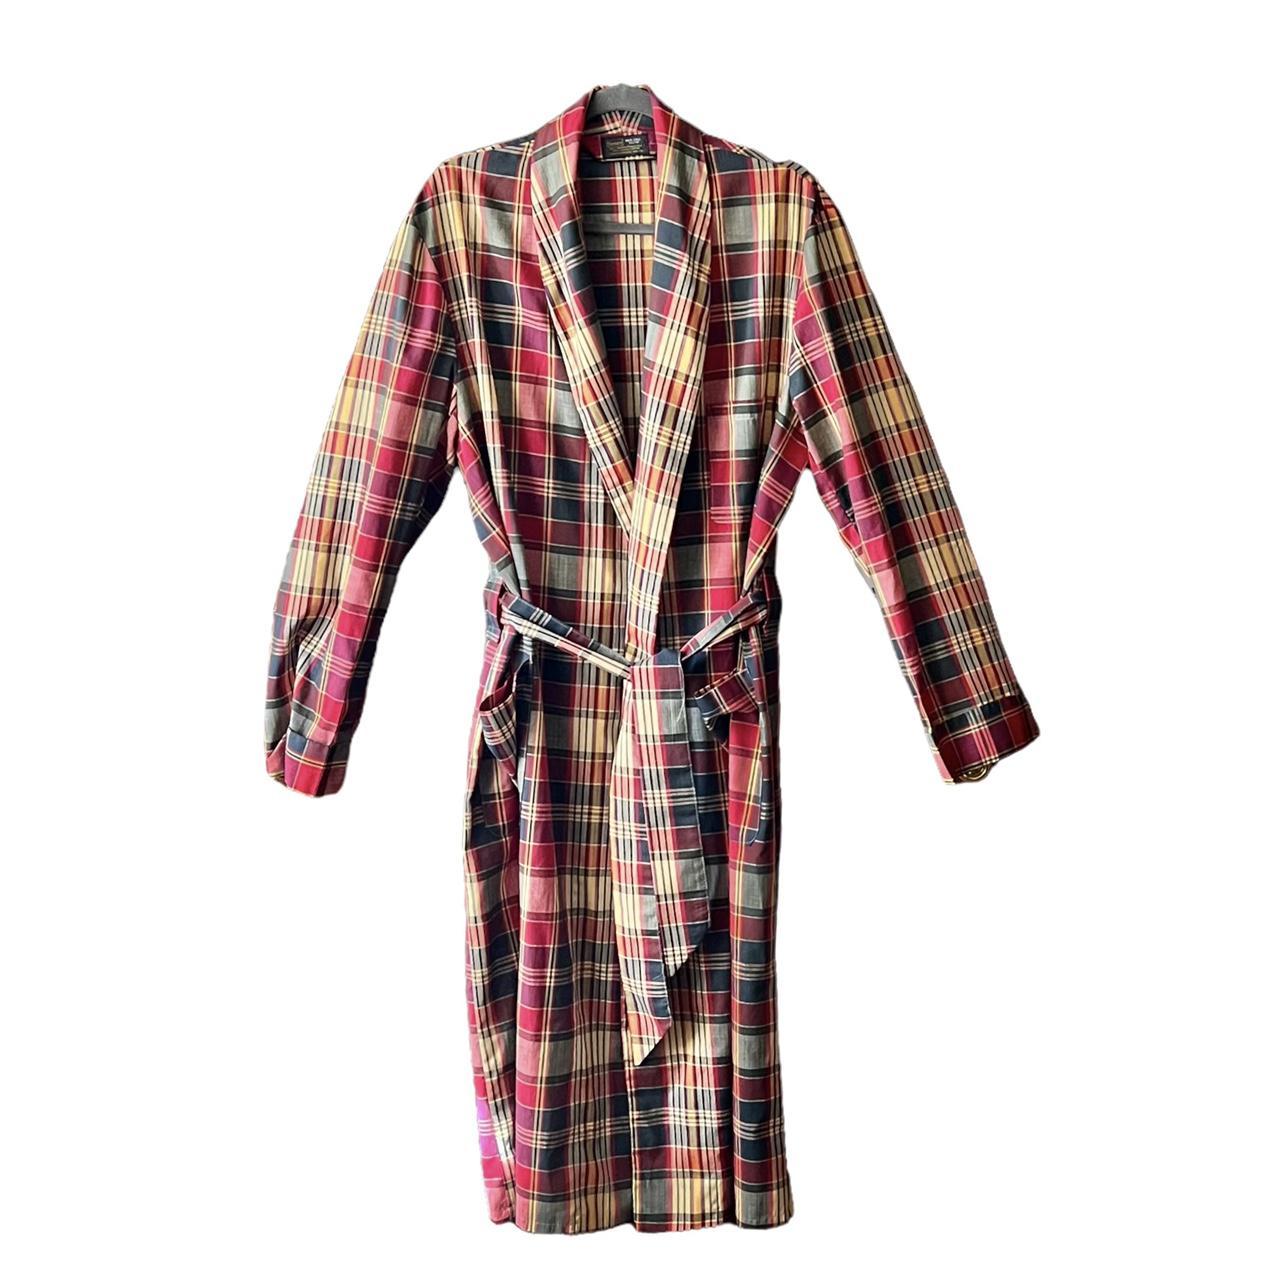 Sears Women's Multi Robe